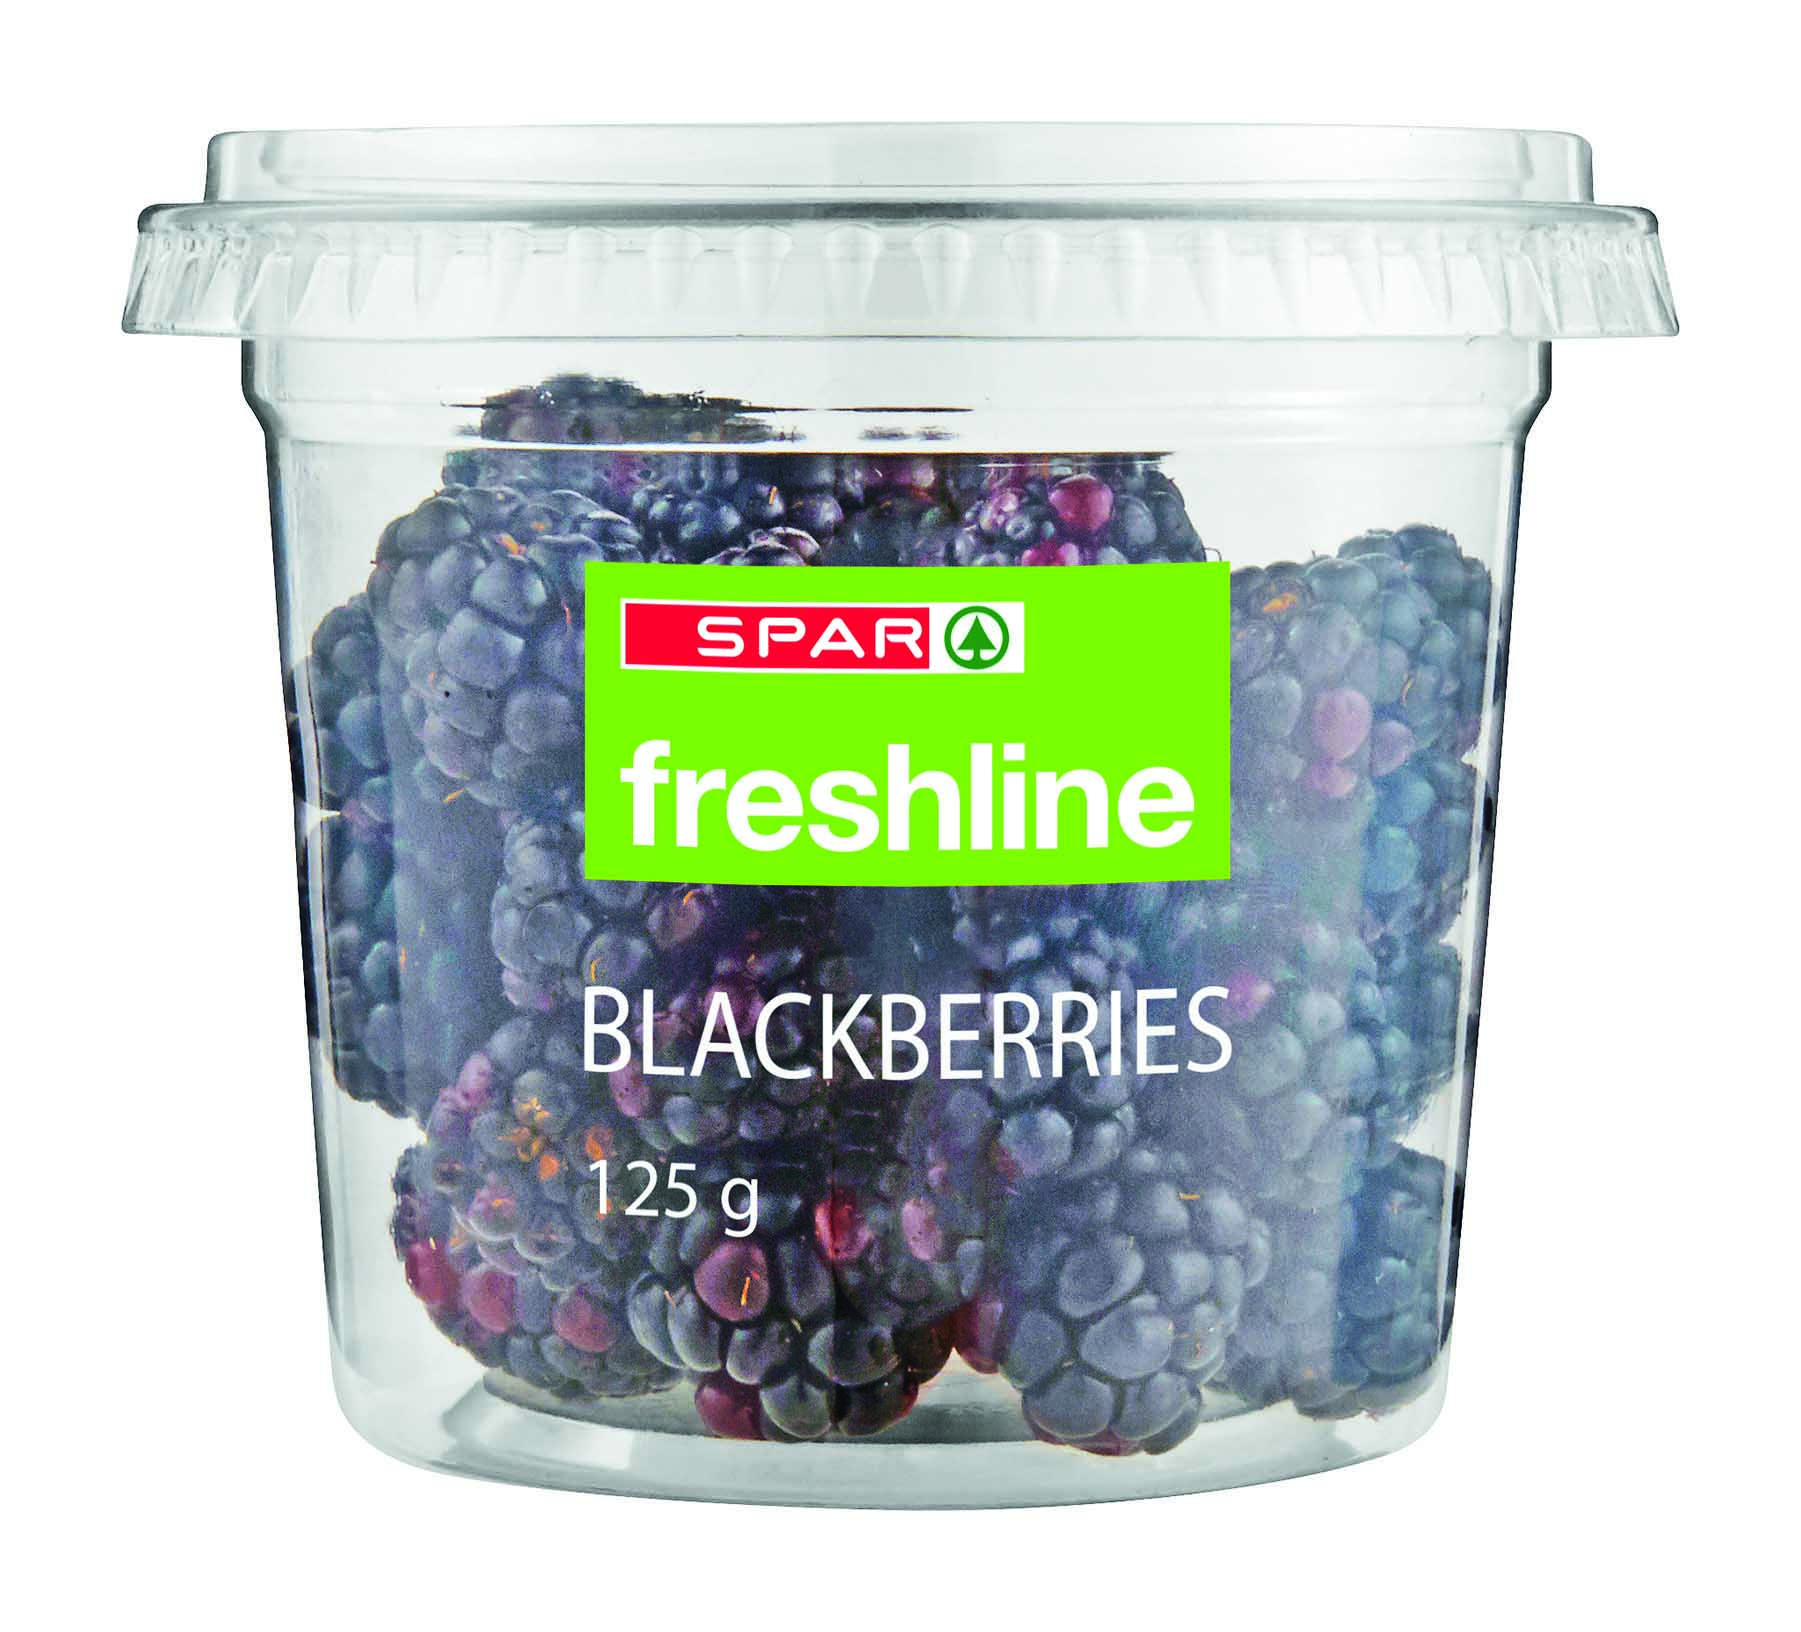 freshline blackberries